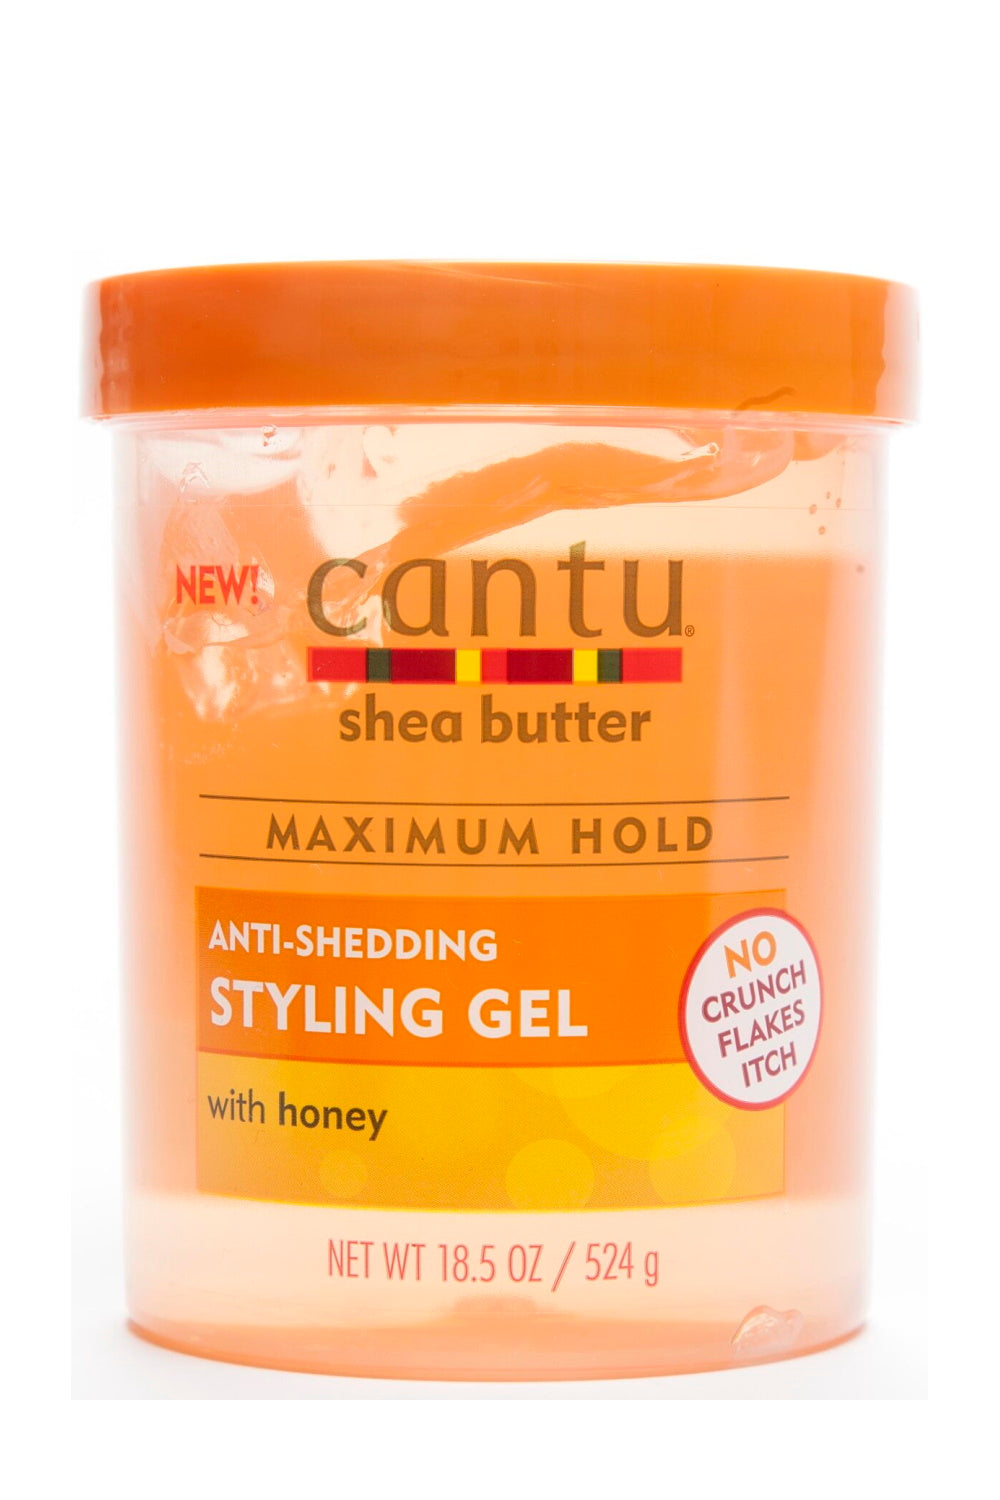 Cantu Shea butter Anti-shedding Styling Gel 18.5 oz 524g - Beauty Flex UK